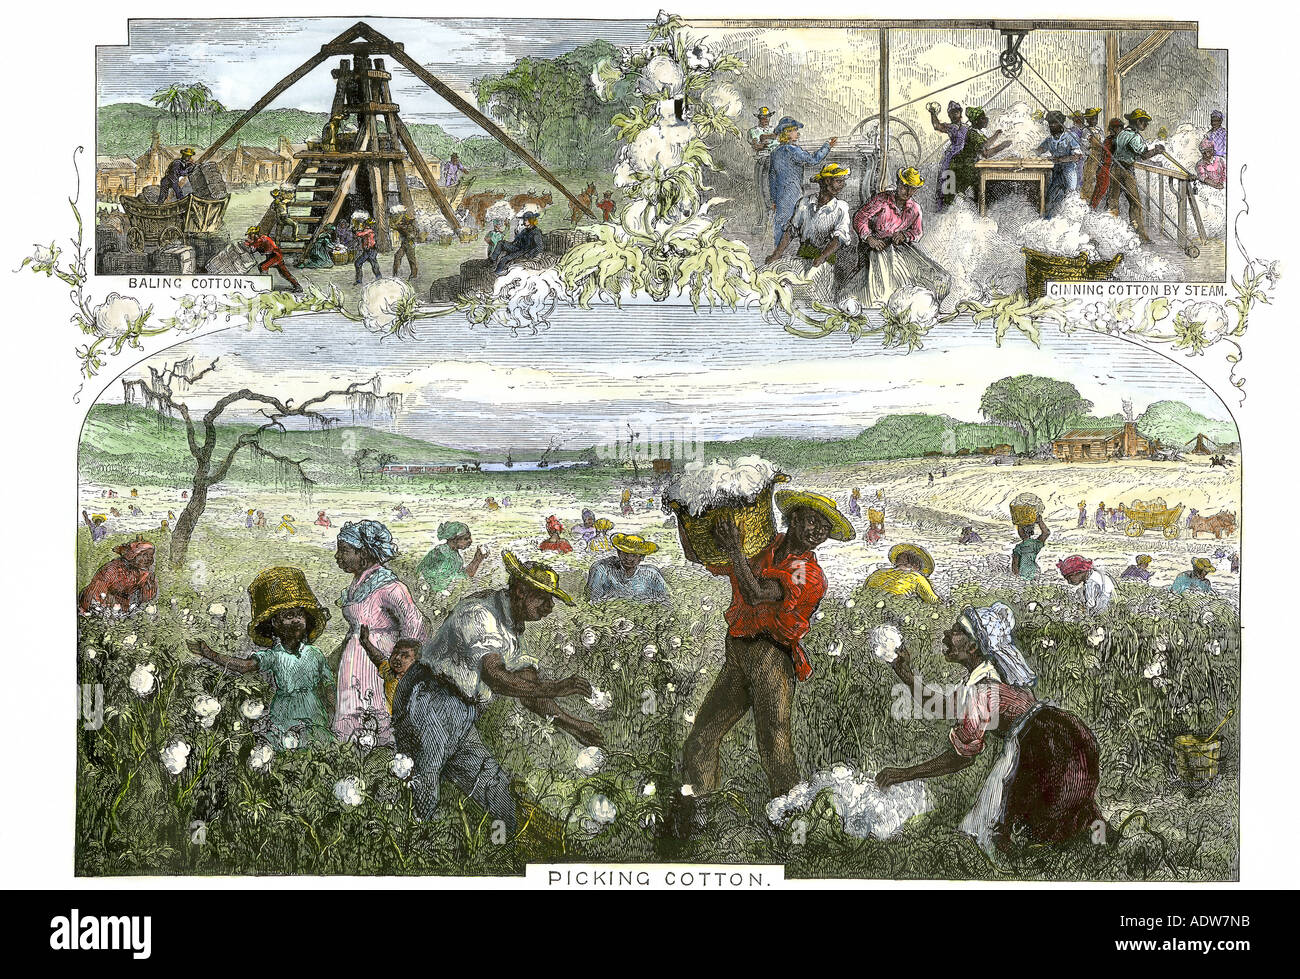 Los esclavos americanos africanos recogida y empacado de algodón desmotado por vapor en una plantación en el sur de Estados Unidos, 1800. Xilografía coloreada a mano Foto de stock